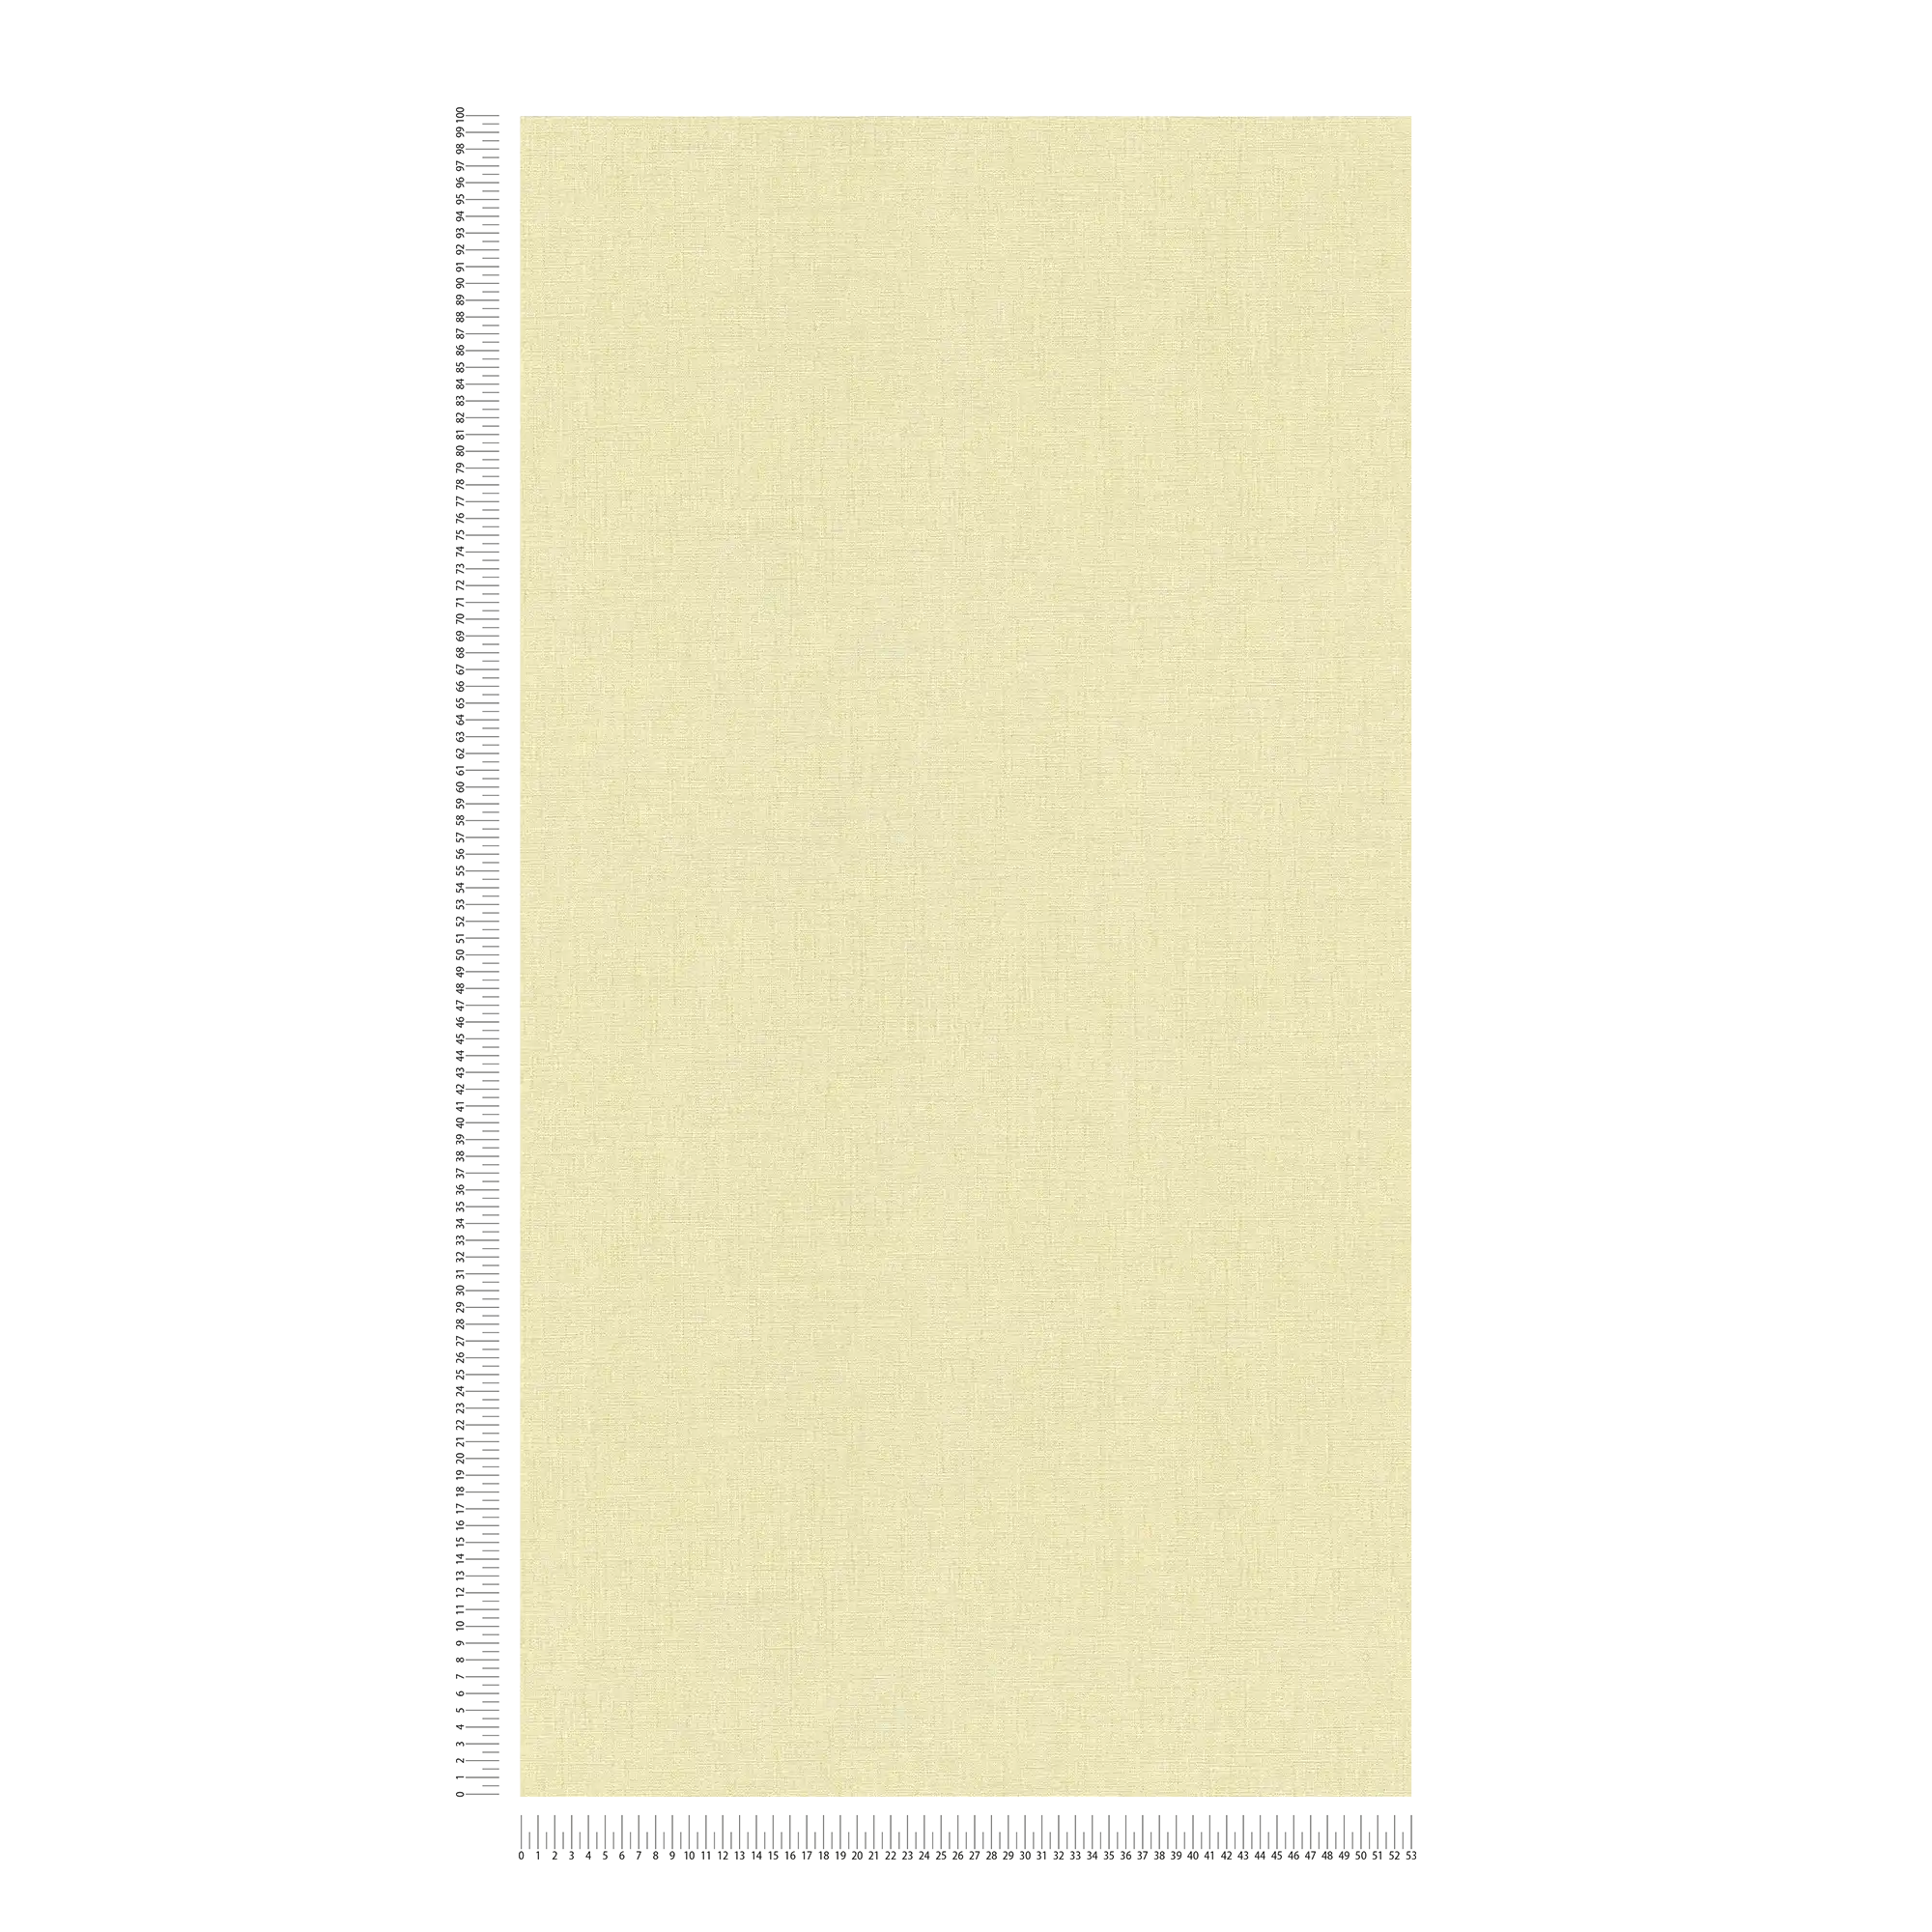             Carta da parati a tinta unita con texture leggera e aspetto opaco - giallo, verde
        